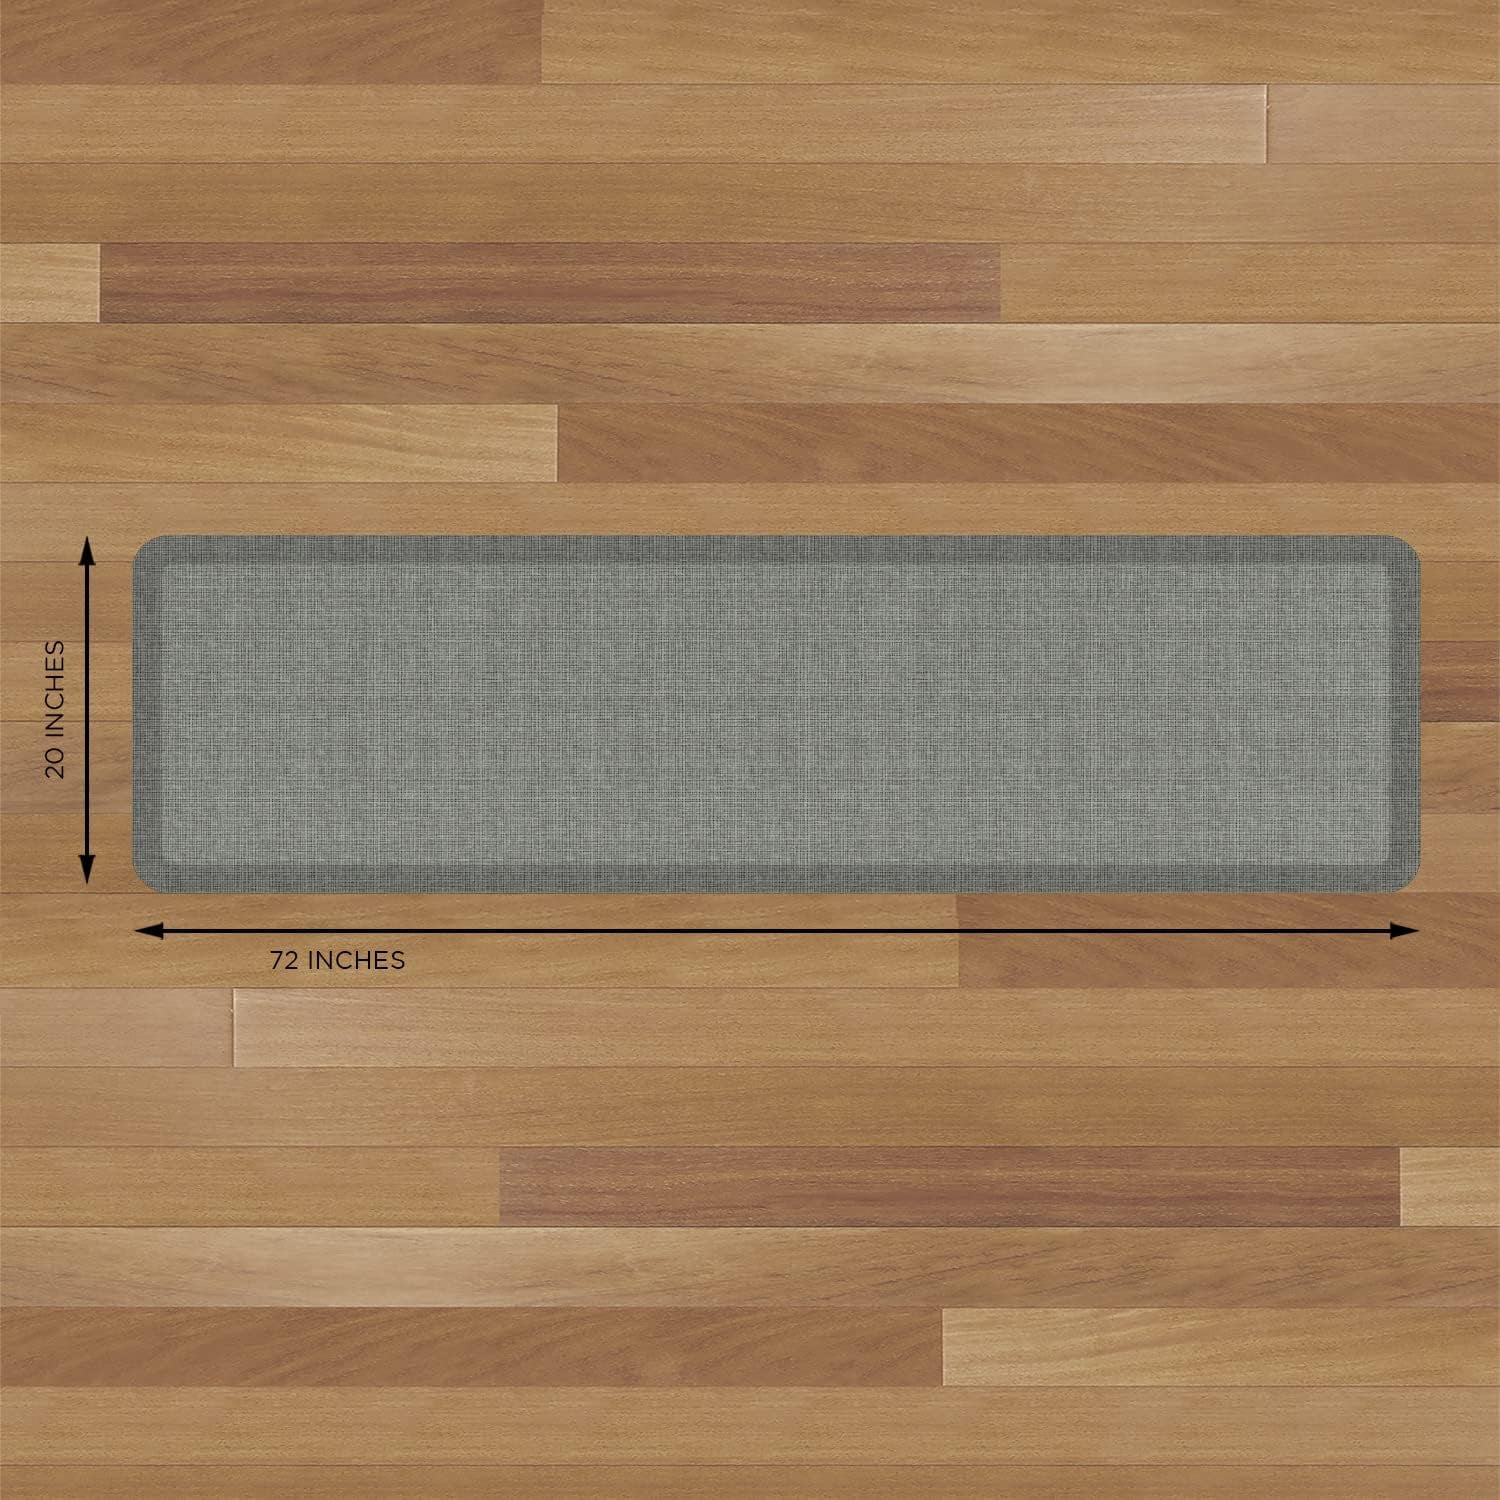 GelPro NewLife Designer Comfort Kitchen Floor Mat 20x72 Tweed Grey